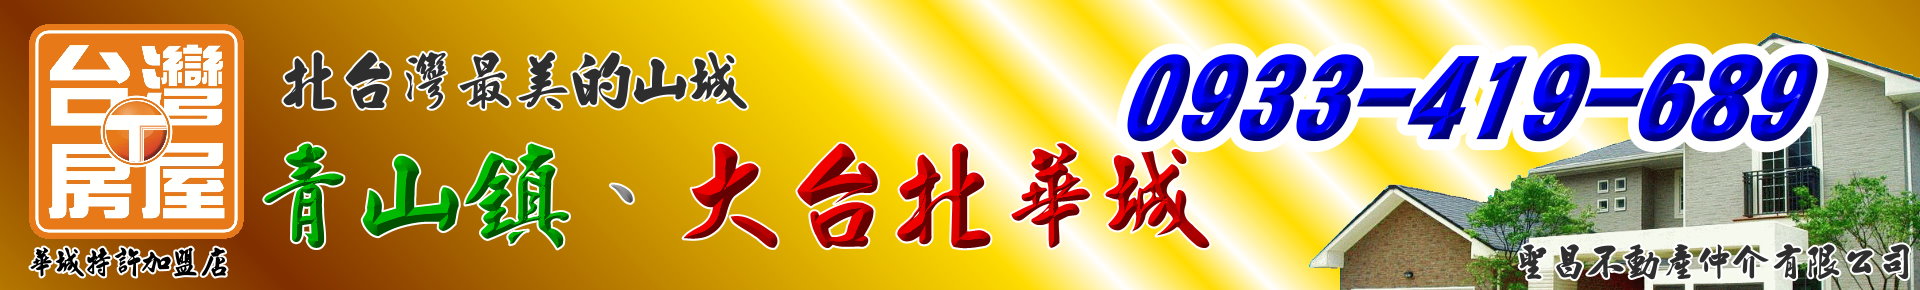 【白健芬】一次委託~終身信賴(大台北華城/青山鎮) (104報紙房屋網 買屋 賣屋 租屋 委租 委賣 平台,專業房屋仲介個人網站) logo